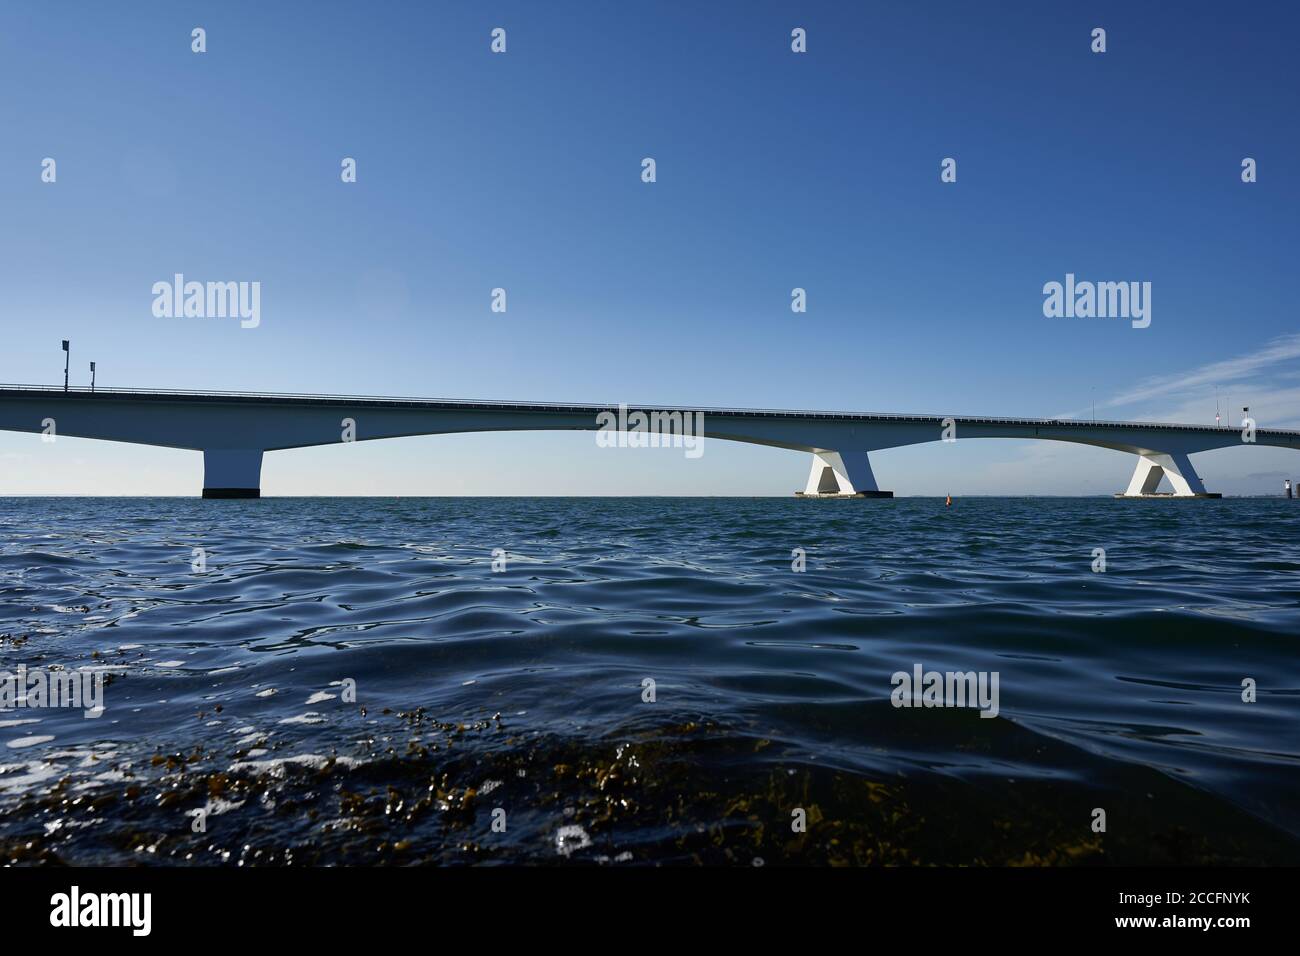 Weiße Zeeland Brücke in Holland, blaues Meerwasser und Himmel, Meeresalgen im Vordergrund. Niederlande, Zeeland. Stockfoto